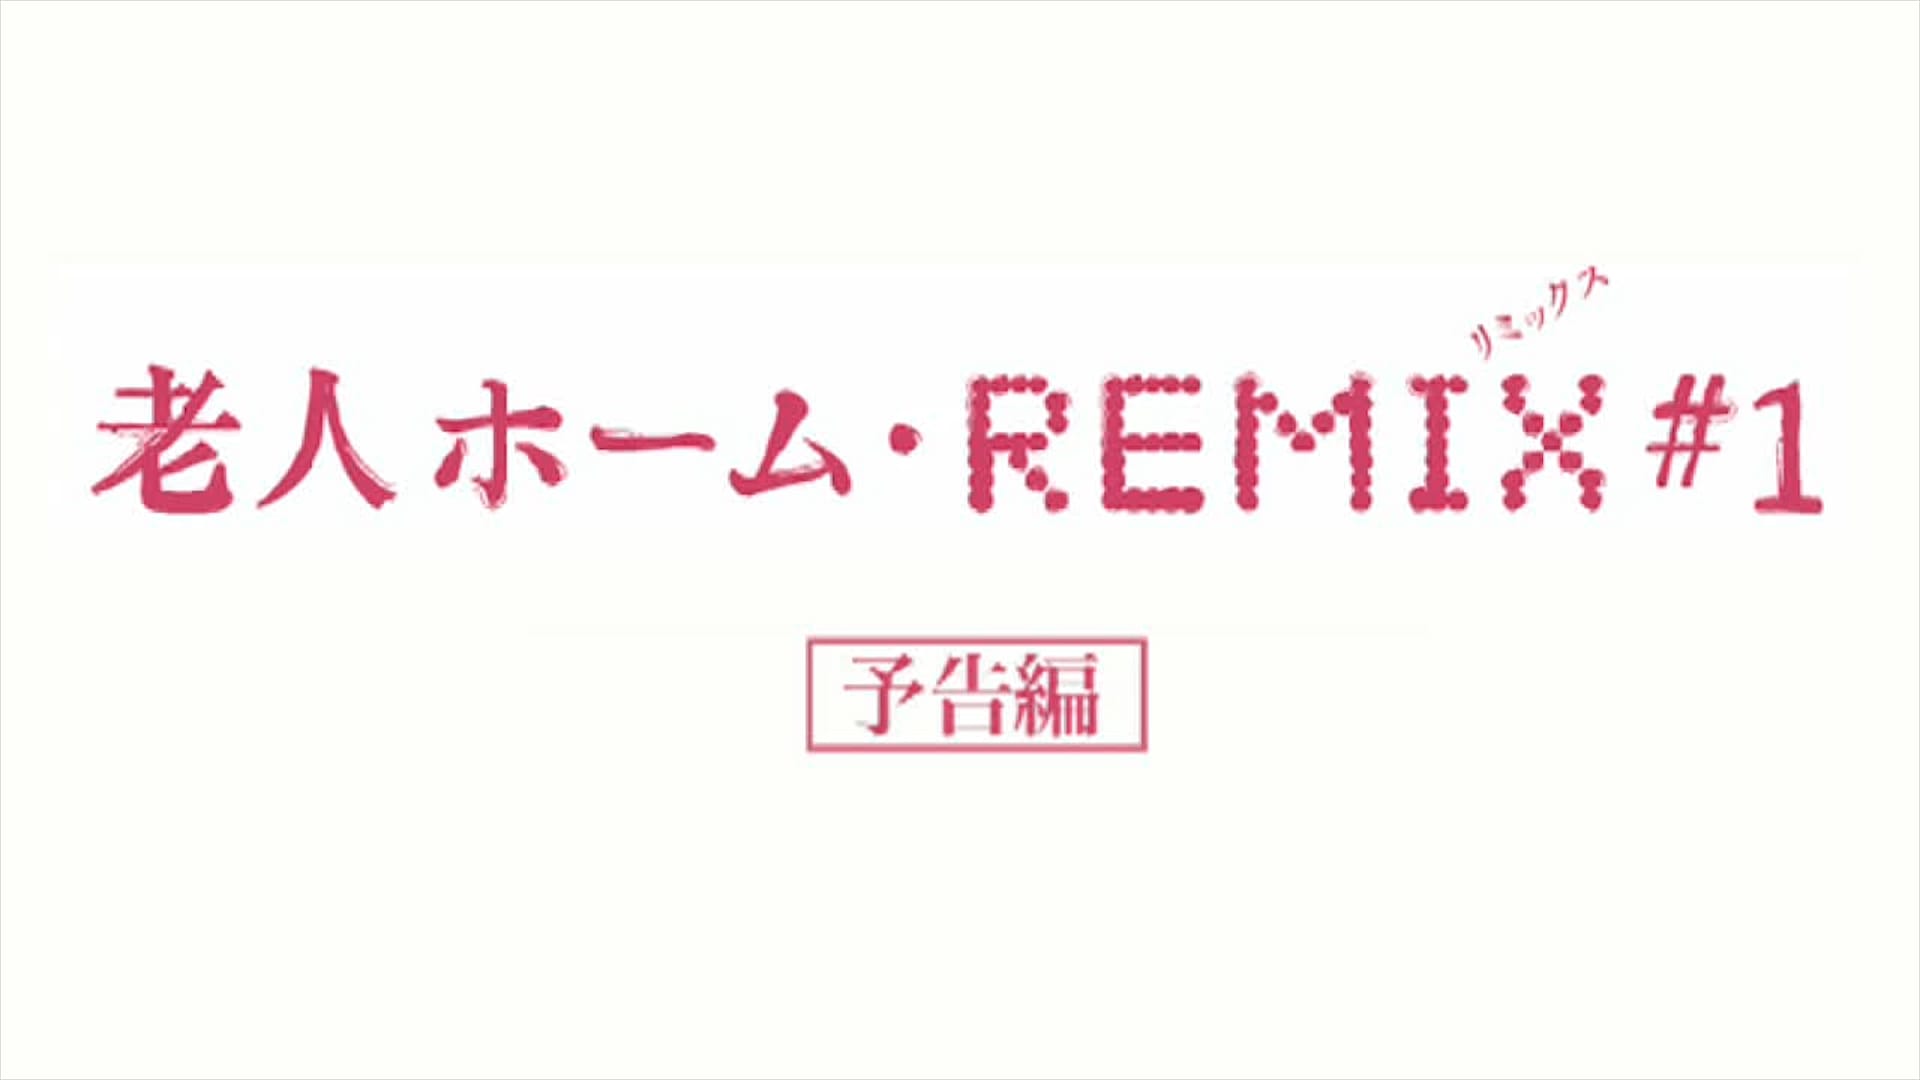 野村誠 老人ホーム・REMIX #1 予告編